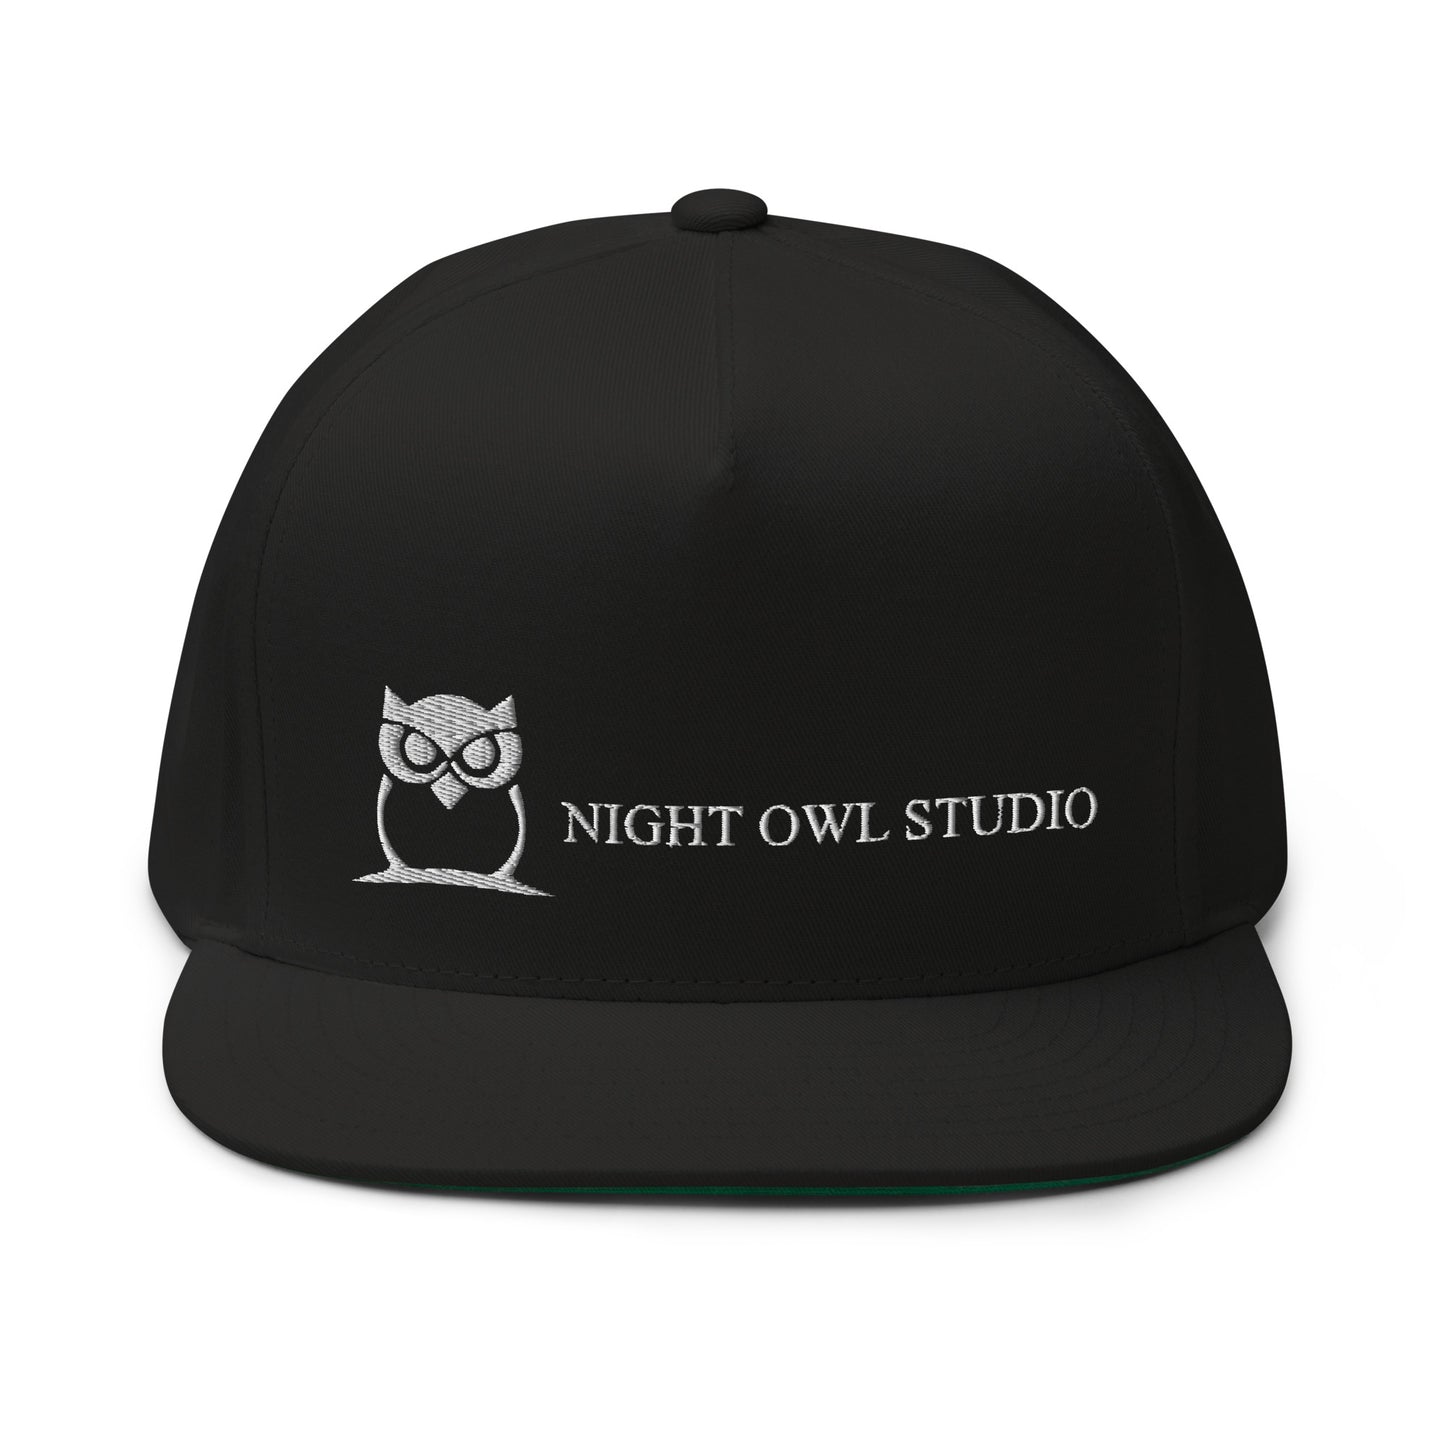 NightOwl-Studio Flat Bill Cap